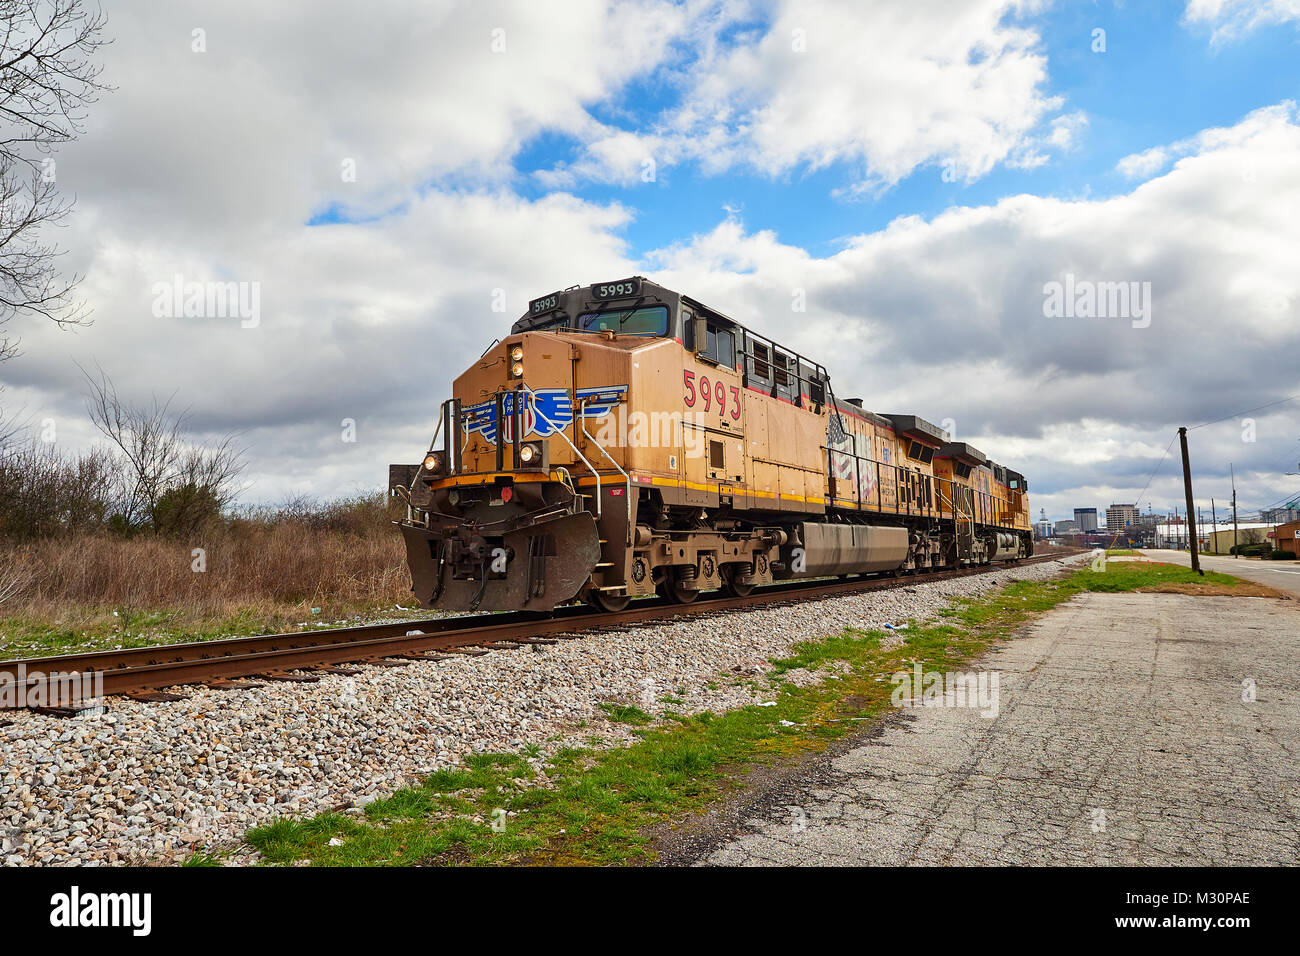 Union Pacific locomotiva diesel #5993 che viaggia lungo un binario ferroviario a Montgomery in Alabama, Stati Uniti d'America. Foto Stock